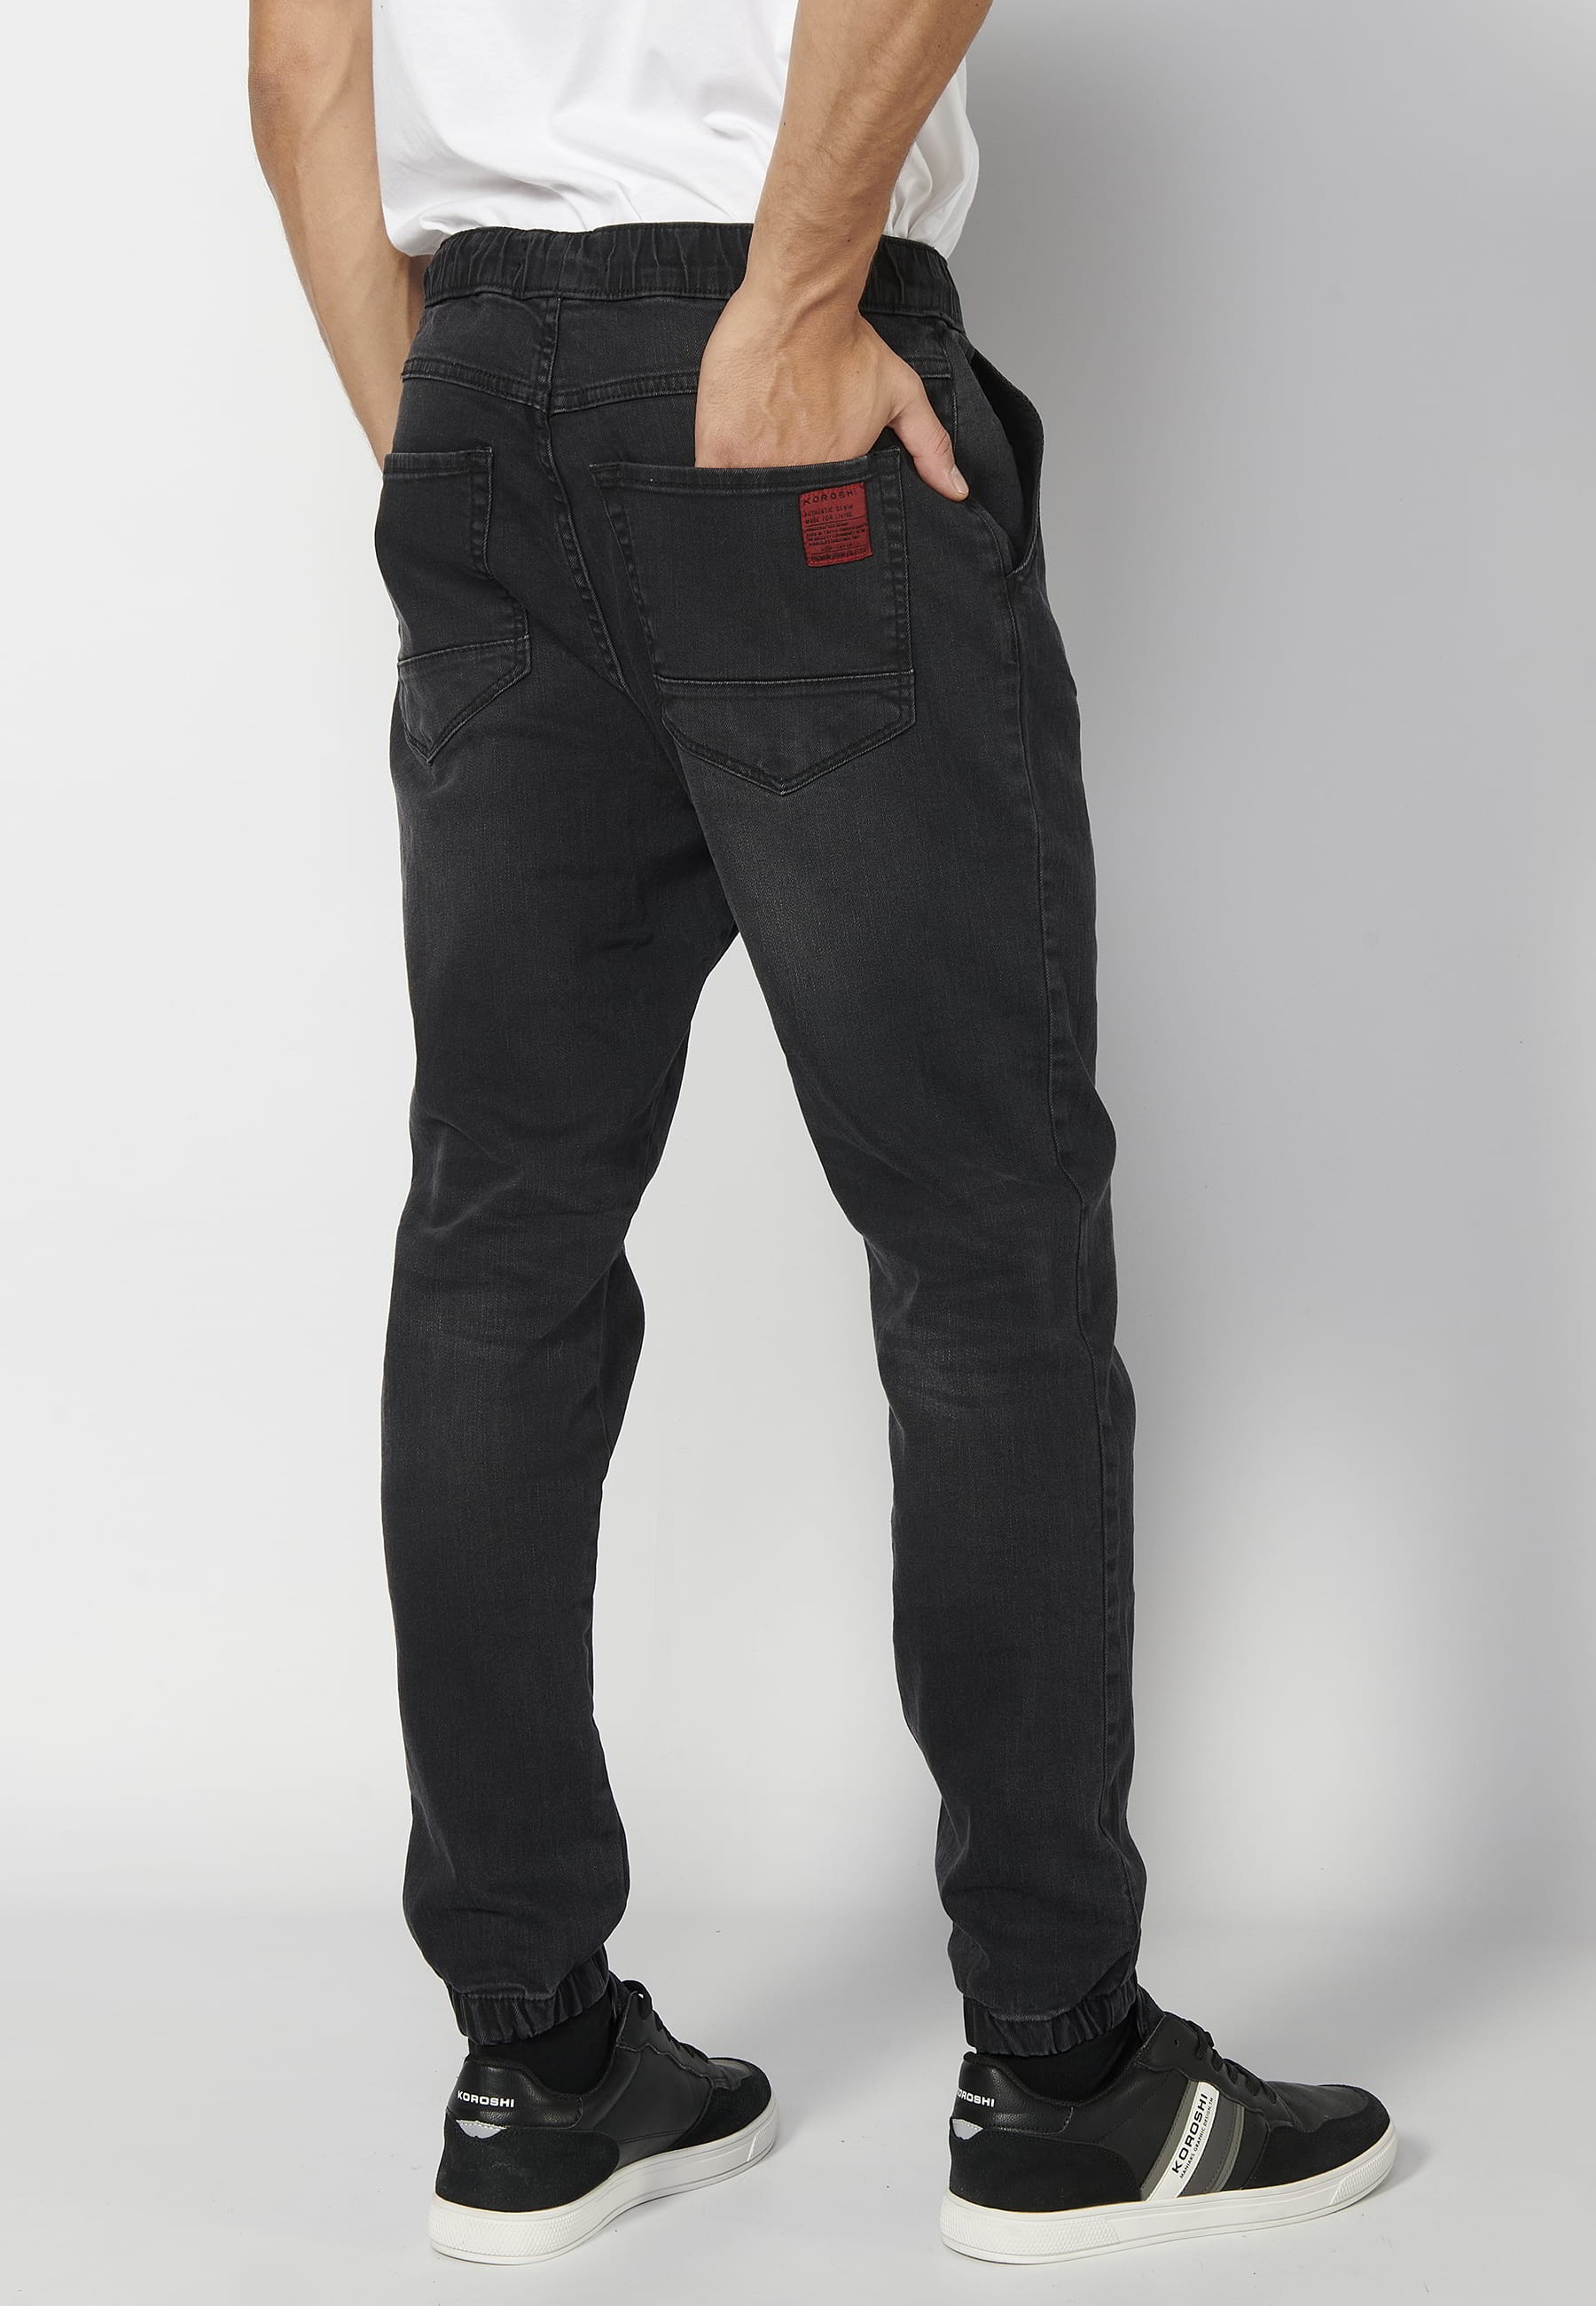 Pantalón Deportivo largo jogger cintura elástica color Negro para Hombre 4